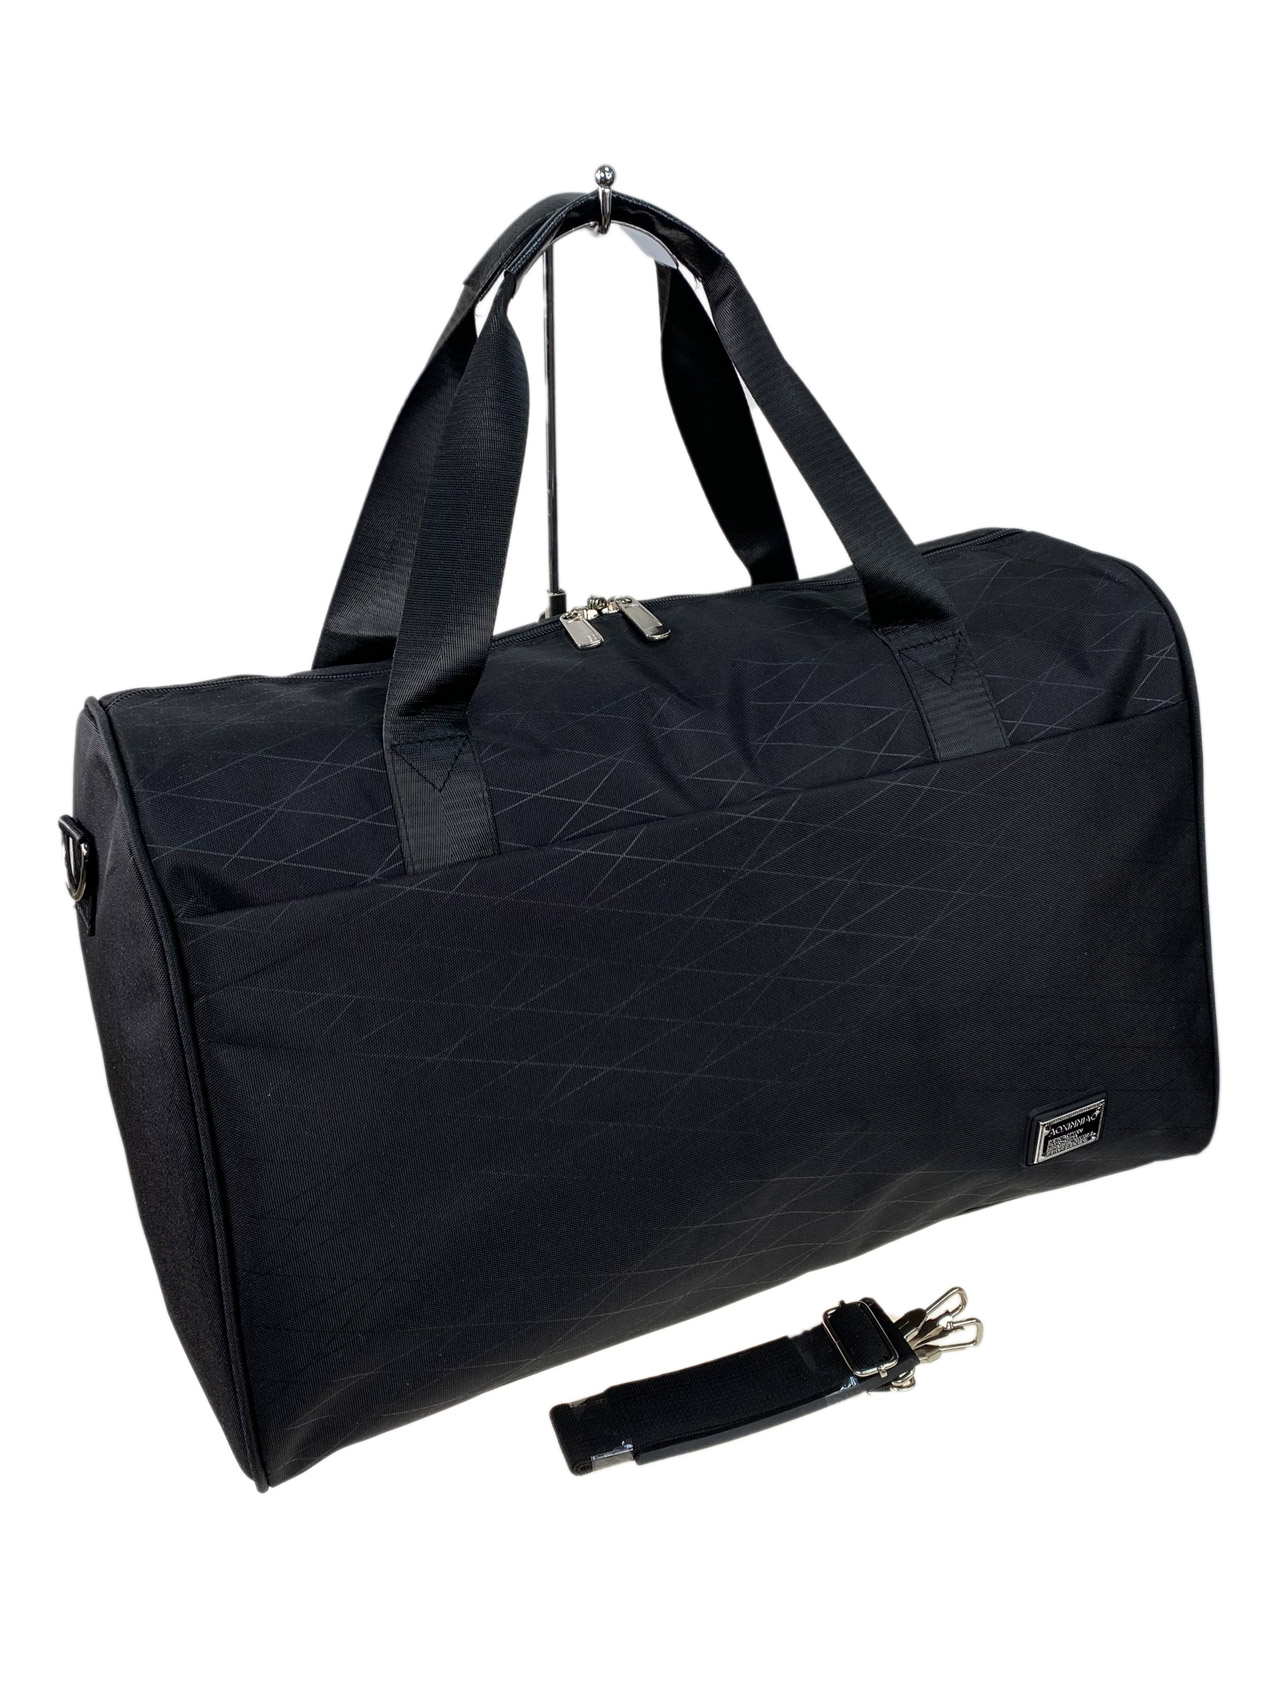 Дорожная сумка из текстиля, цвет черный